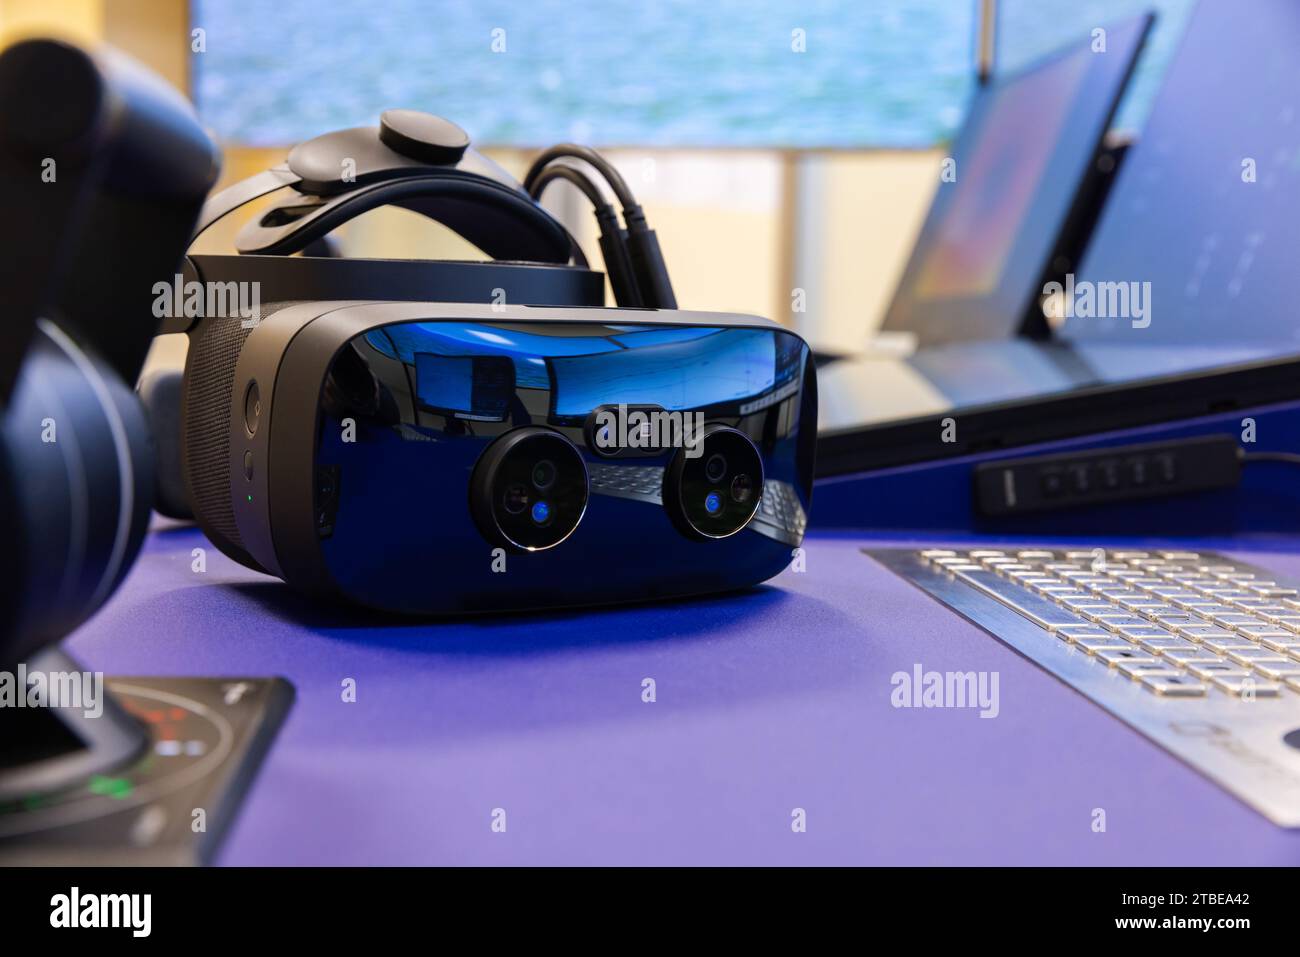 Casque VR avec caméras de réalité augmentée pose sur le bureau, photo en gros plan avec mise au point sélective Banque D'Images